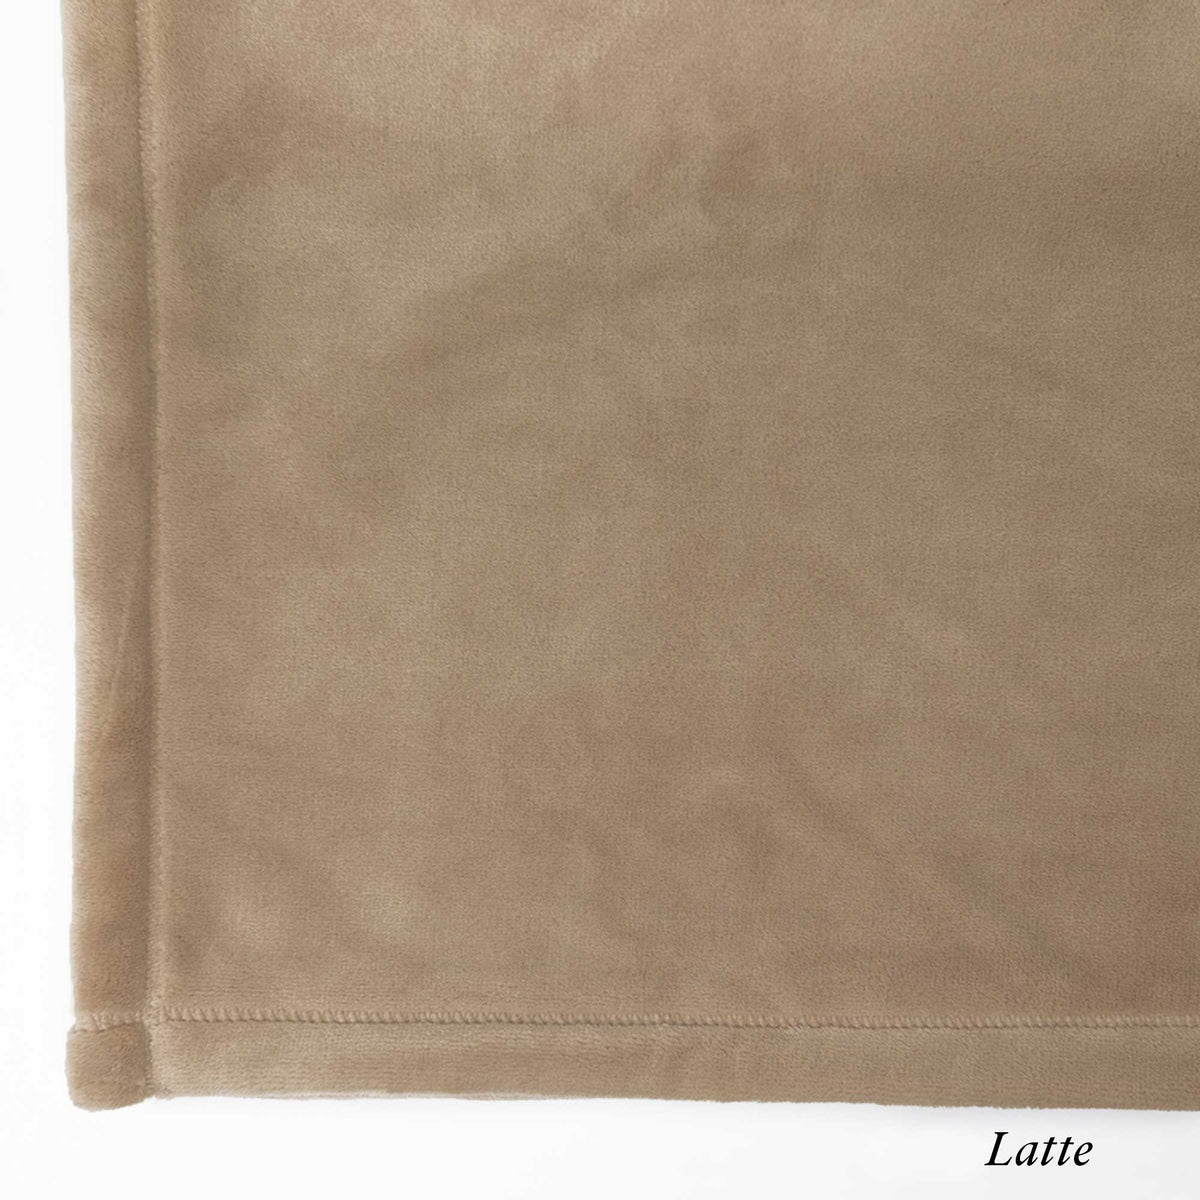 Latte - The Best Fleece Blankets - Custom Size Luster Loft Fleece Blankets - American Blanket Company